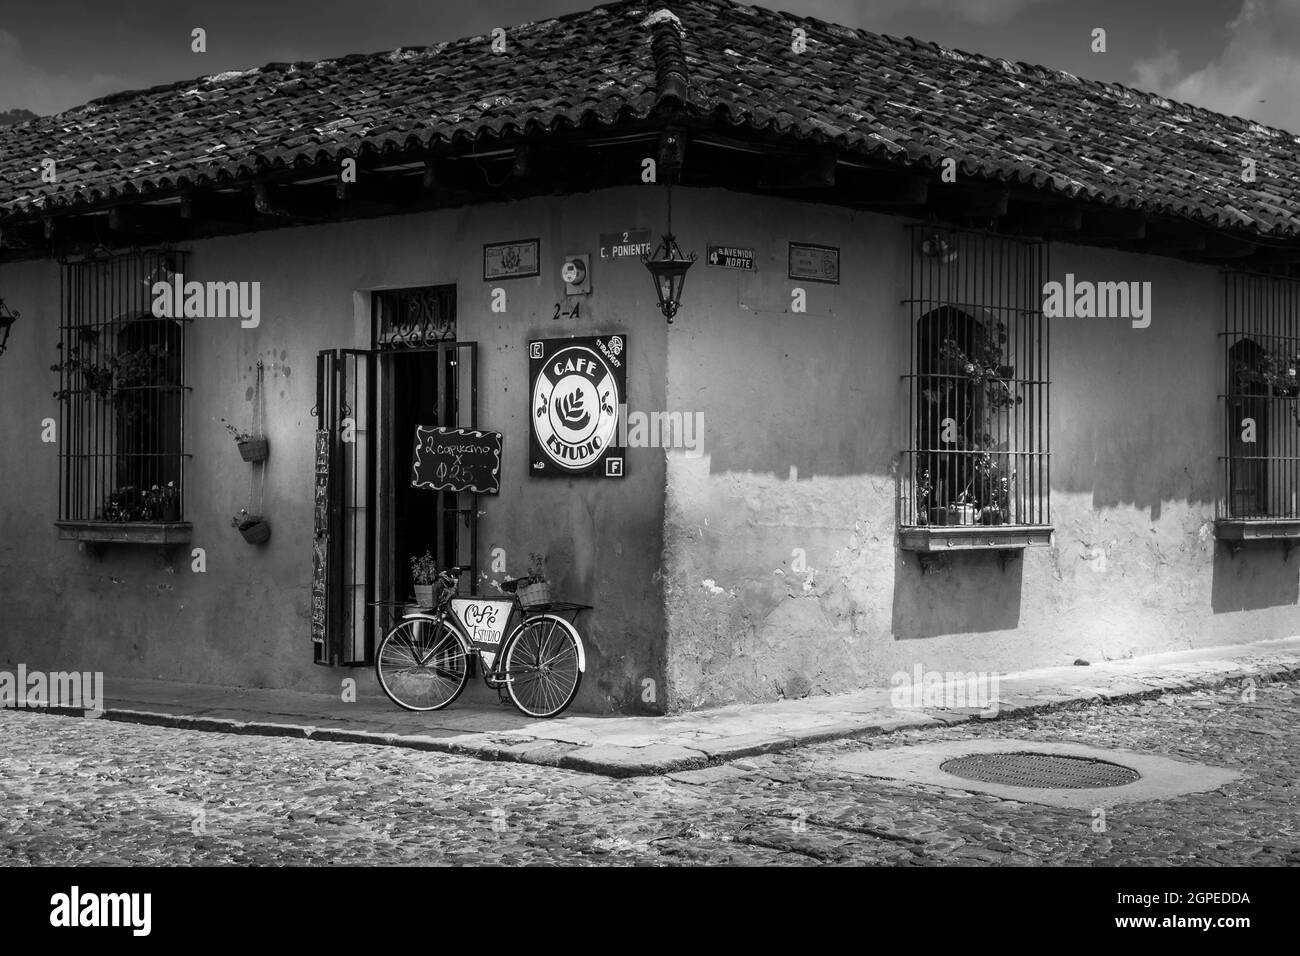 Image en noir et blanc de la boutique d'angle avec vélo solitaire contre le mur à Cartagena Colombie Amérique du Sud. Personne. Banque D'Images